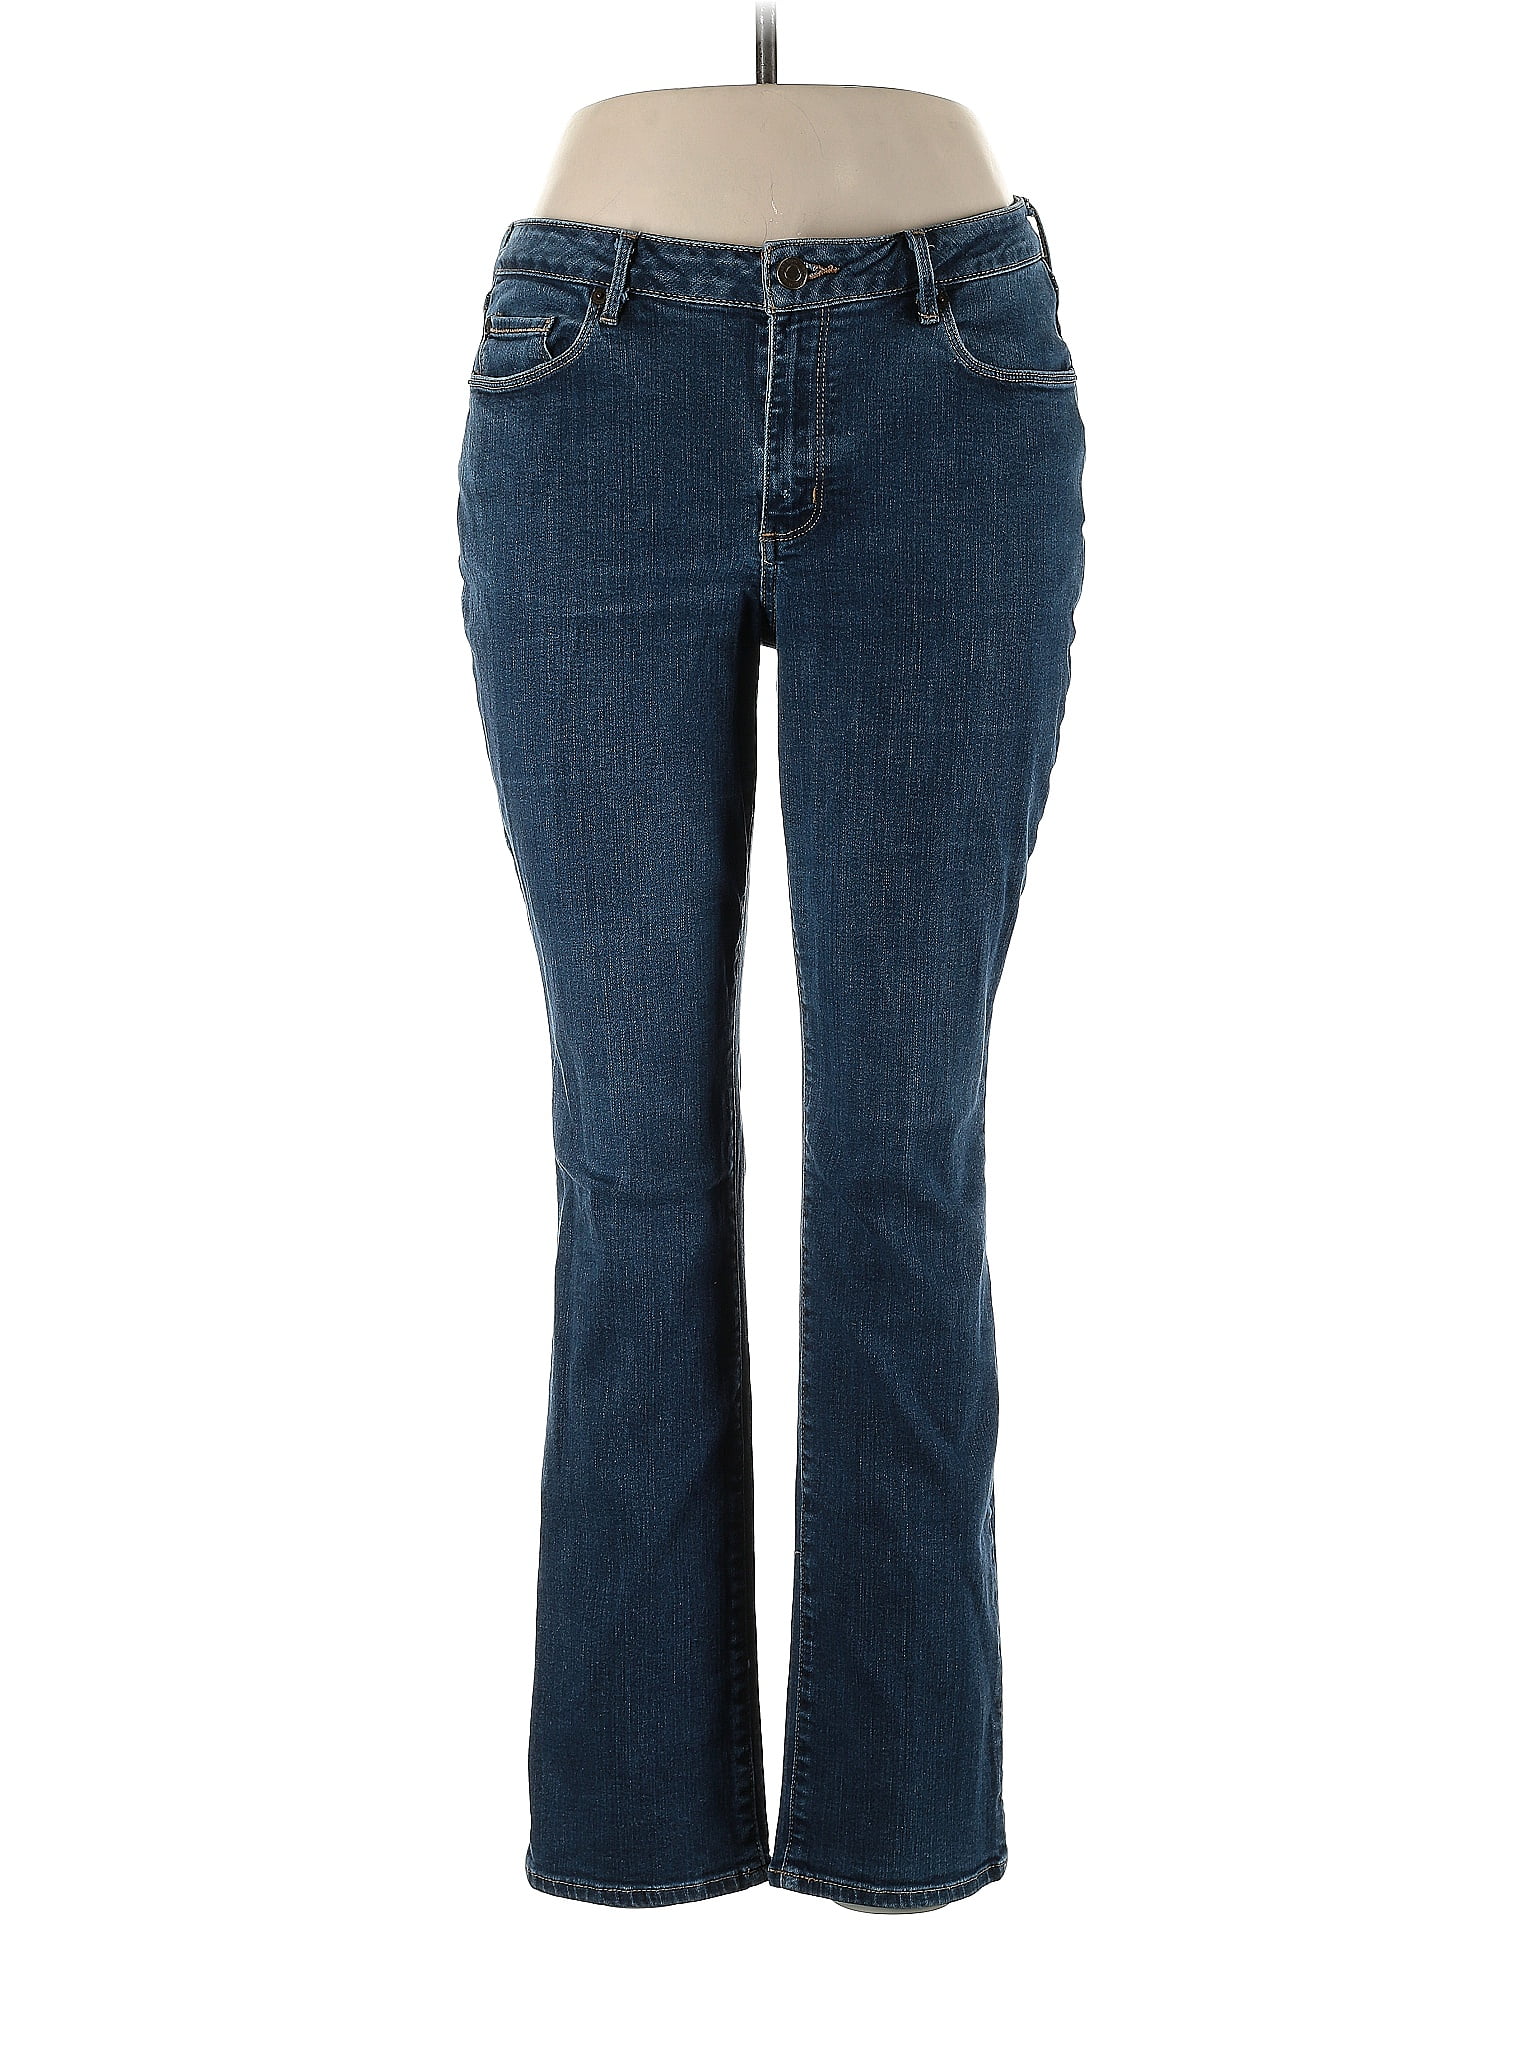 Eddie Bauer Solid Blue Jeans Size 12 - 62% off | thredUP